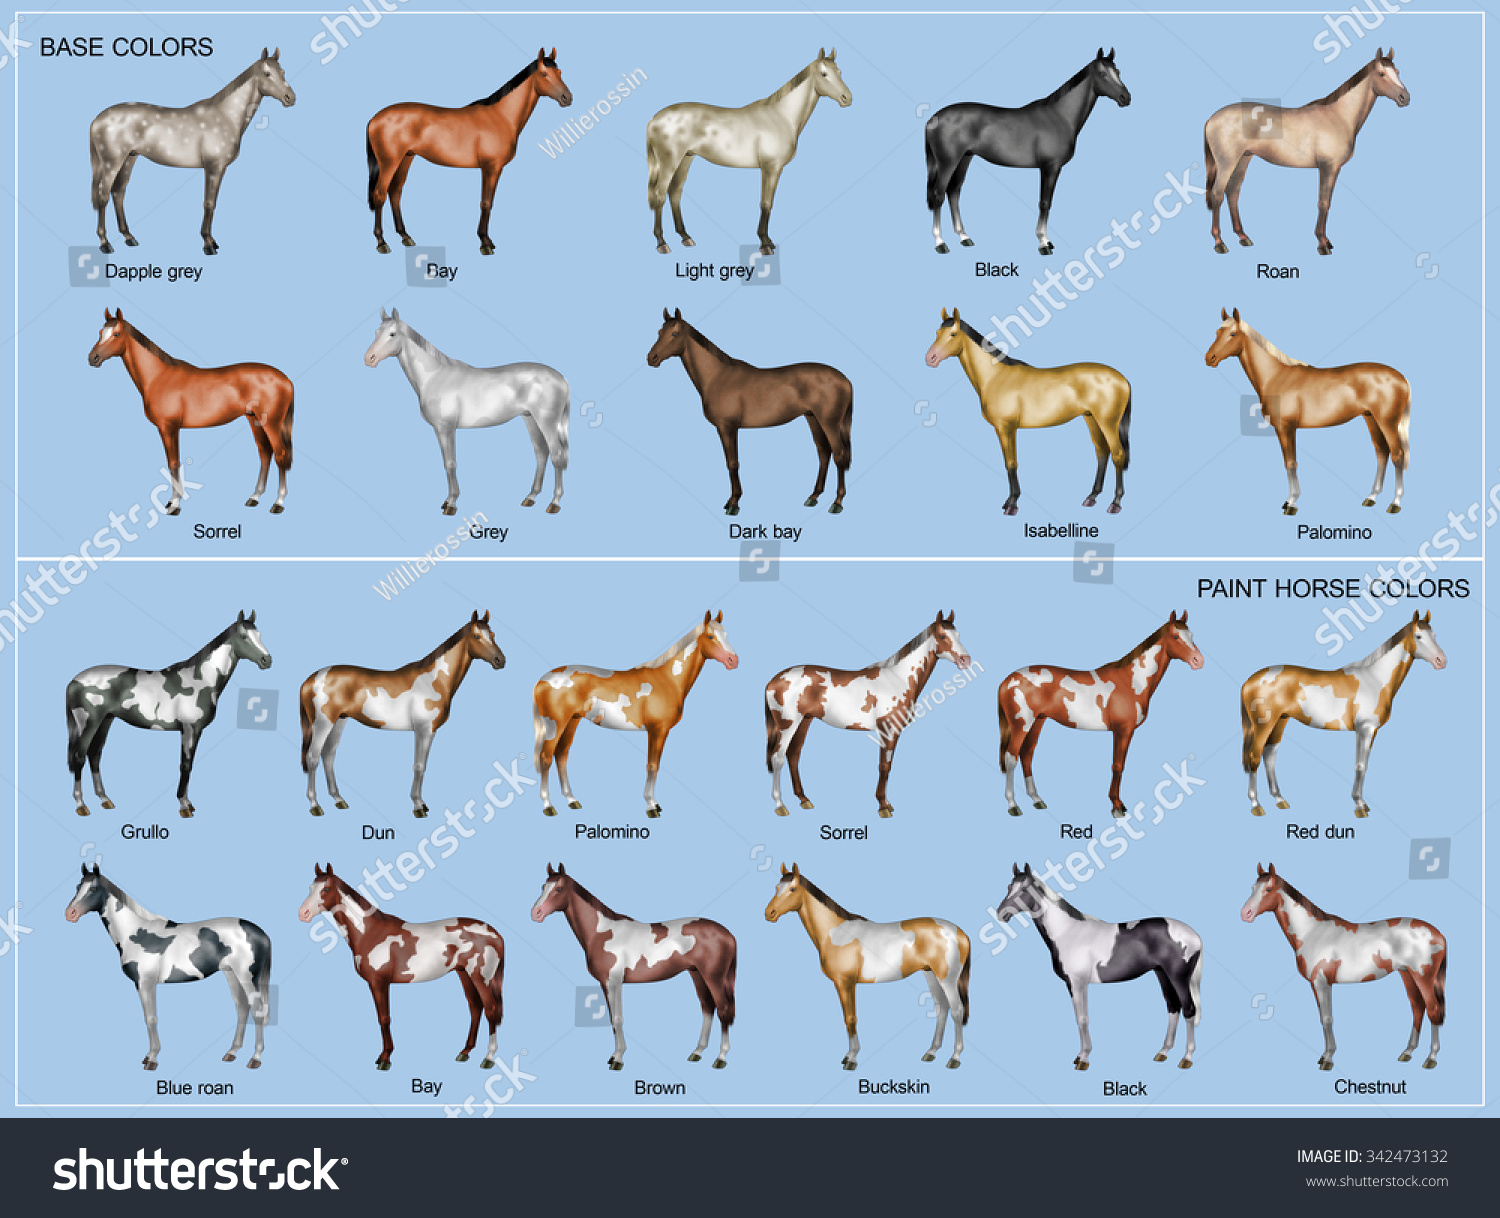 Генетика мастей лошадей